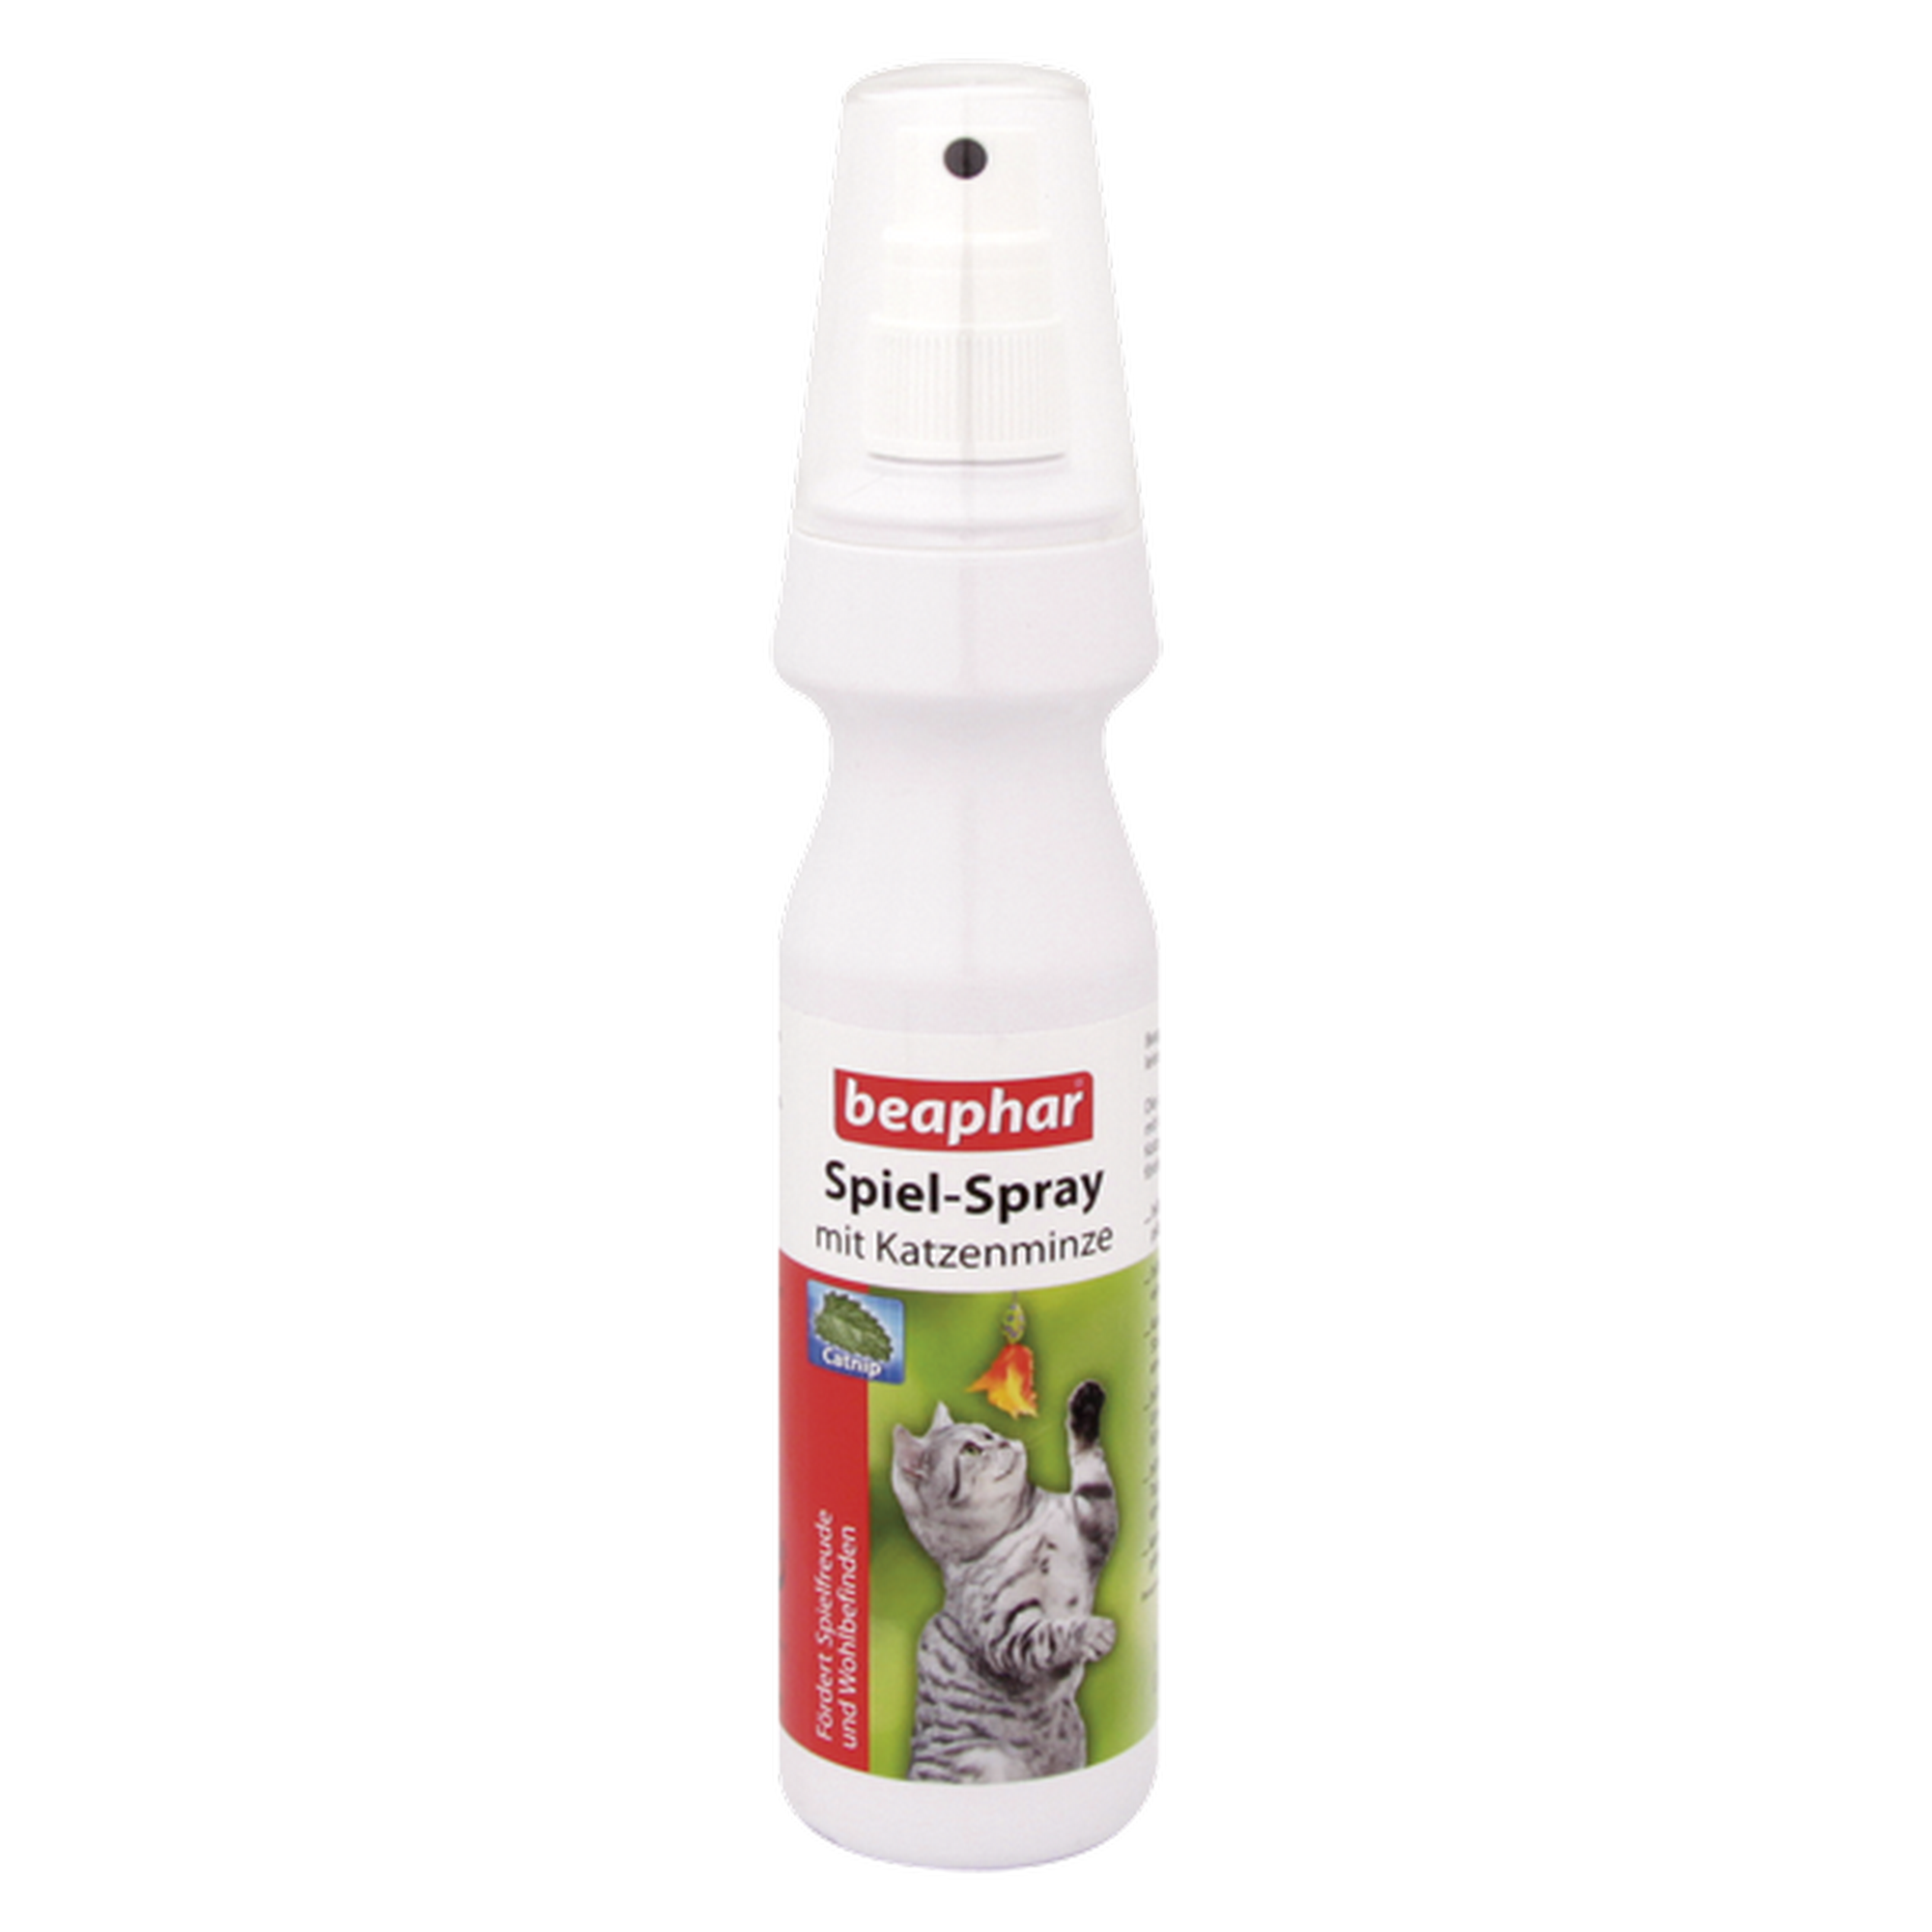 Spiel-Spray mit Katzenminze 150 ml + product picture